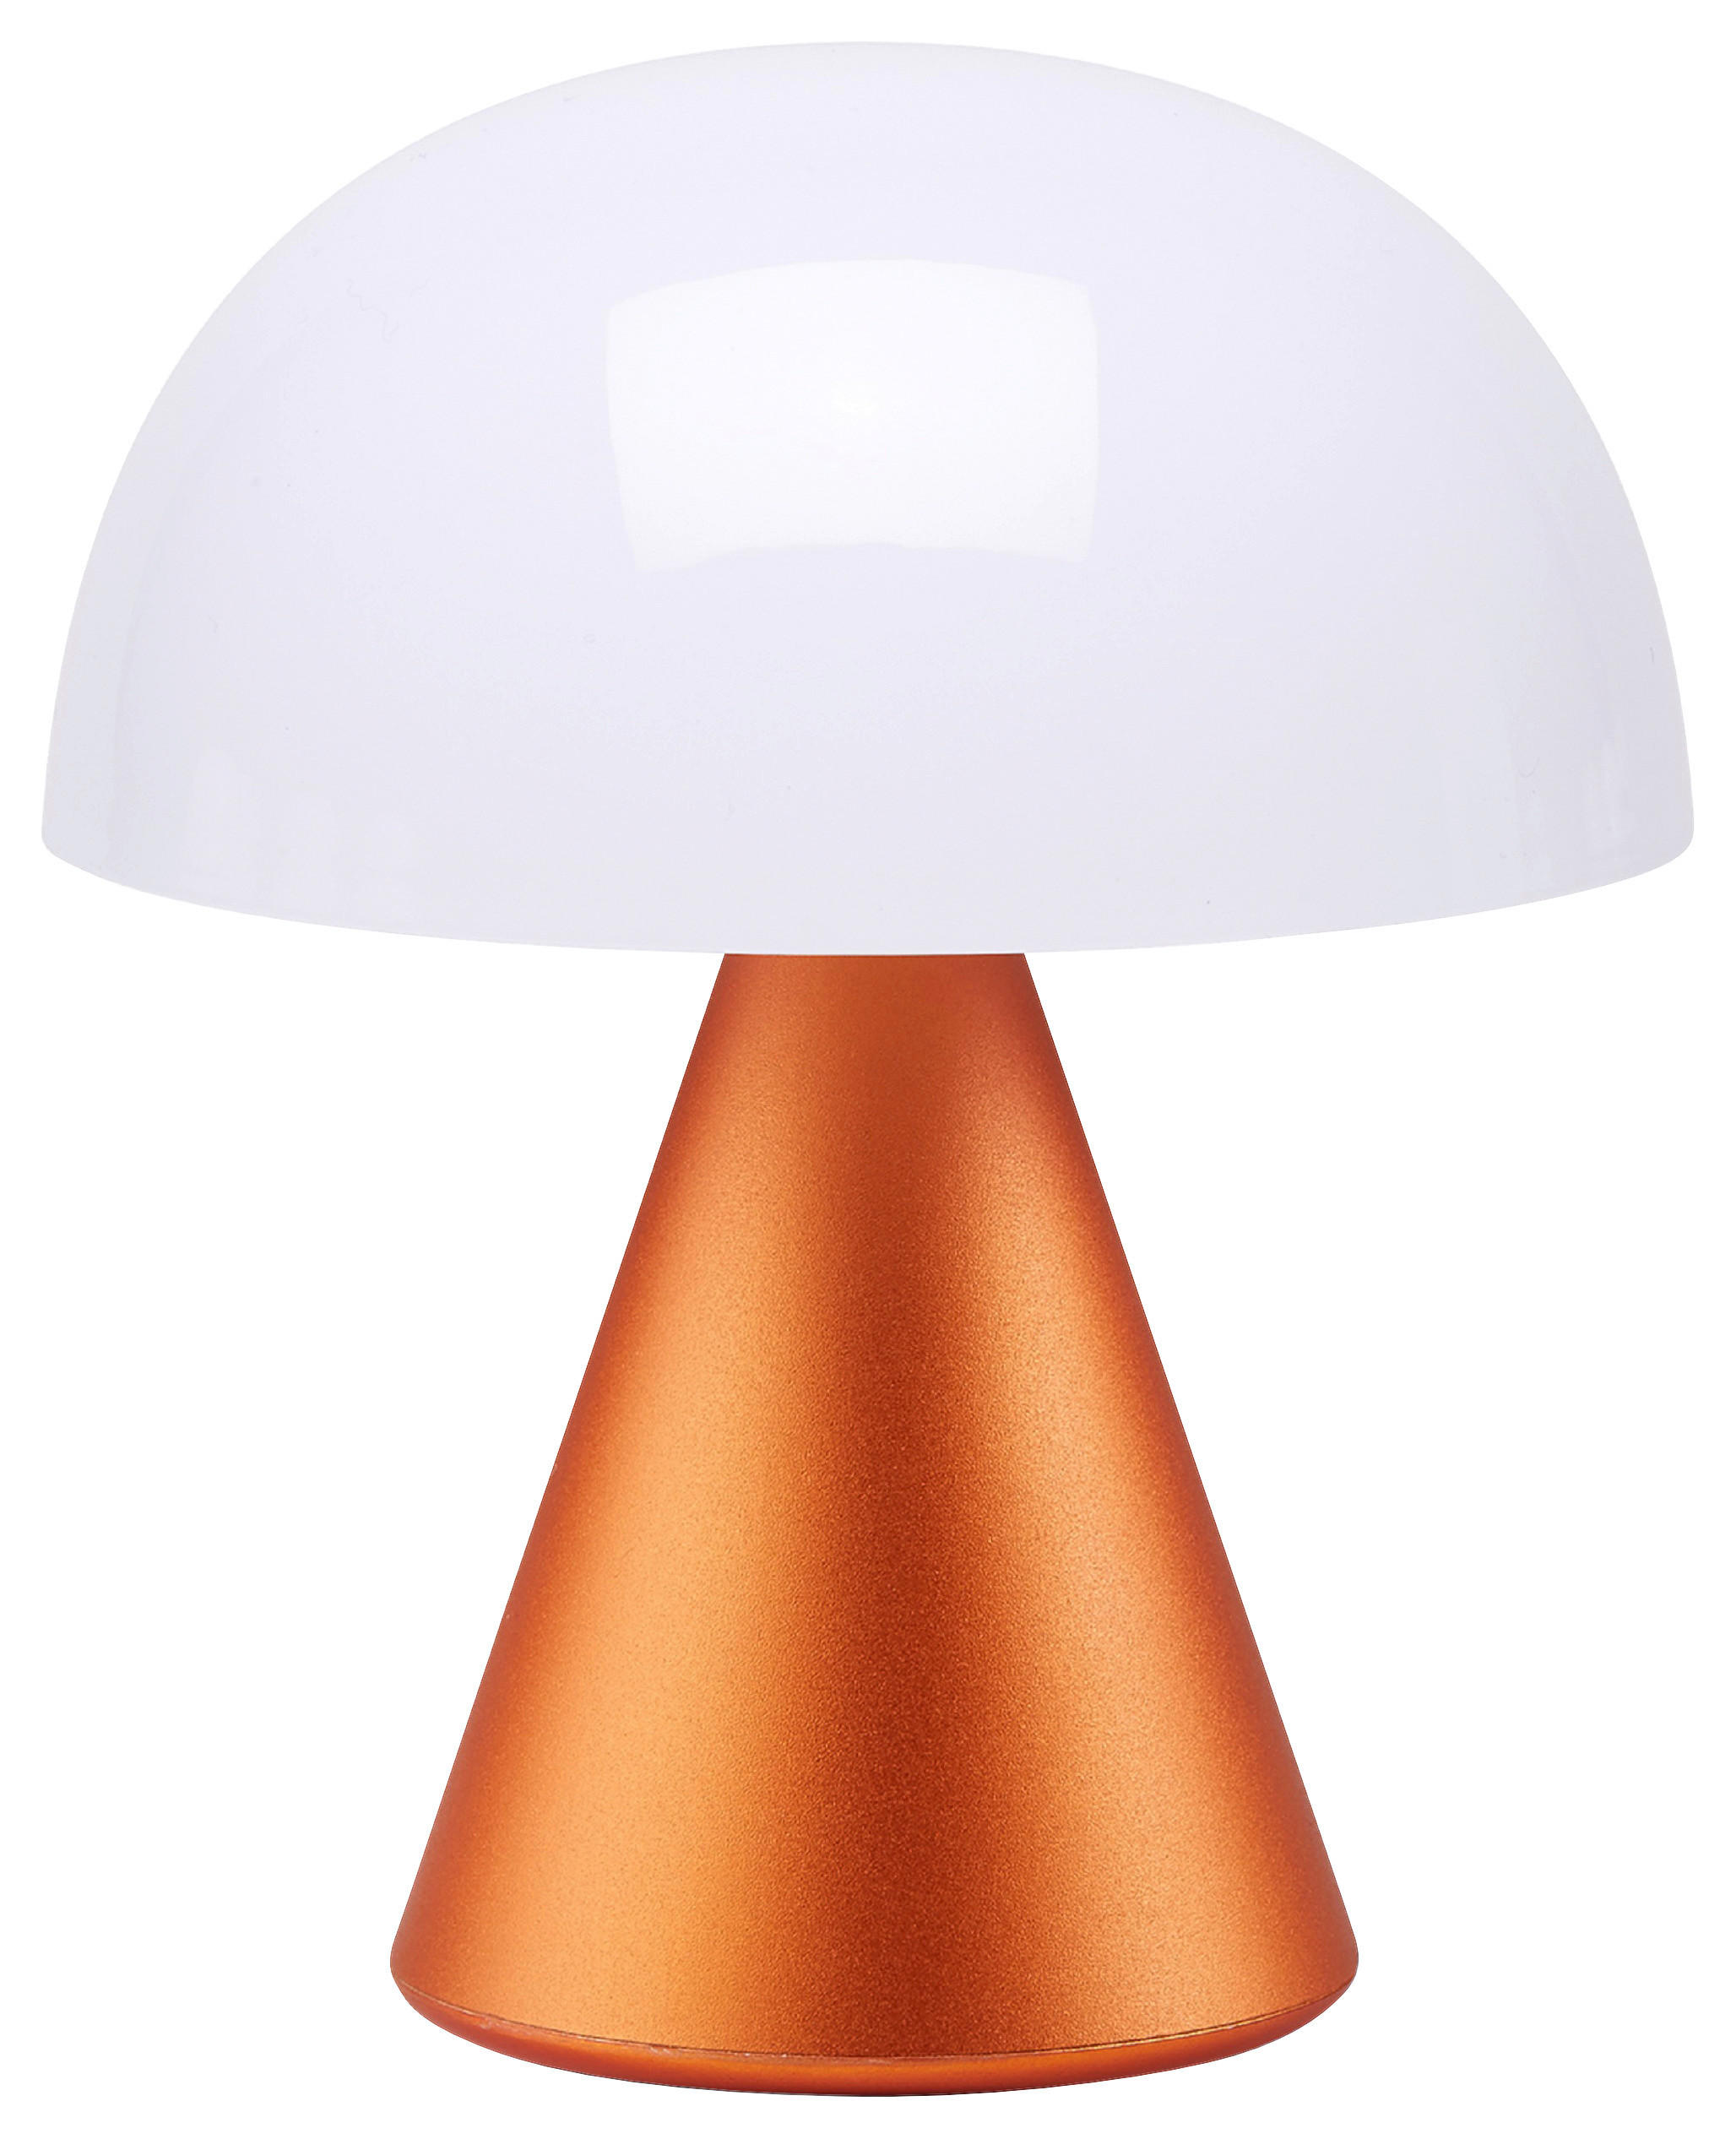 TISCHLEUCHTE  - Orange, Design, Kunststoff/Metall (9,2/11/9,2cm)